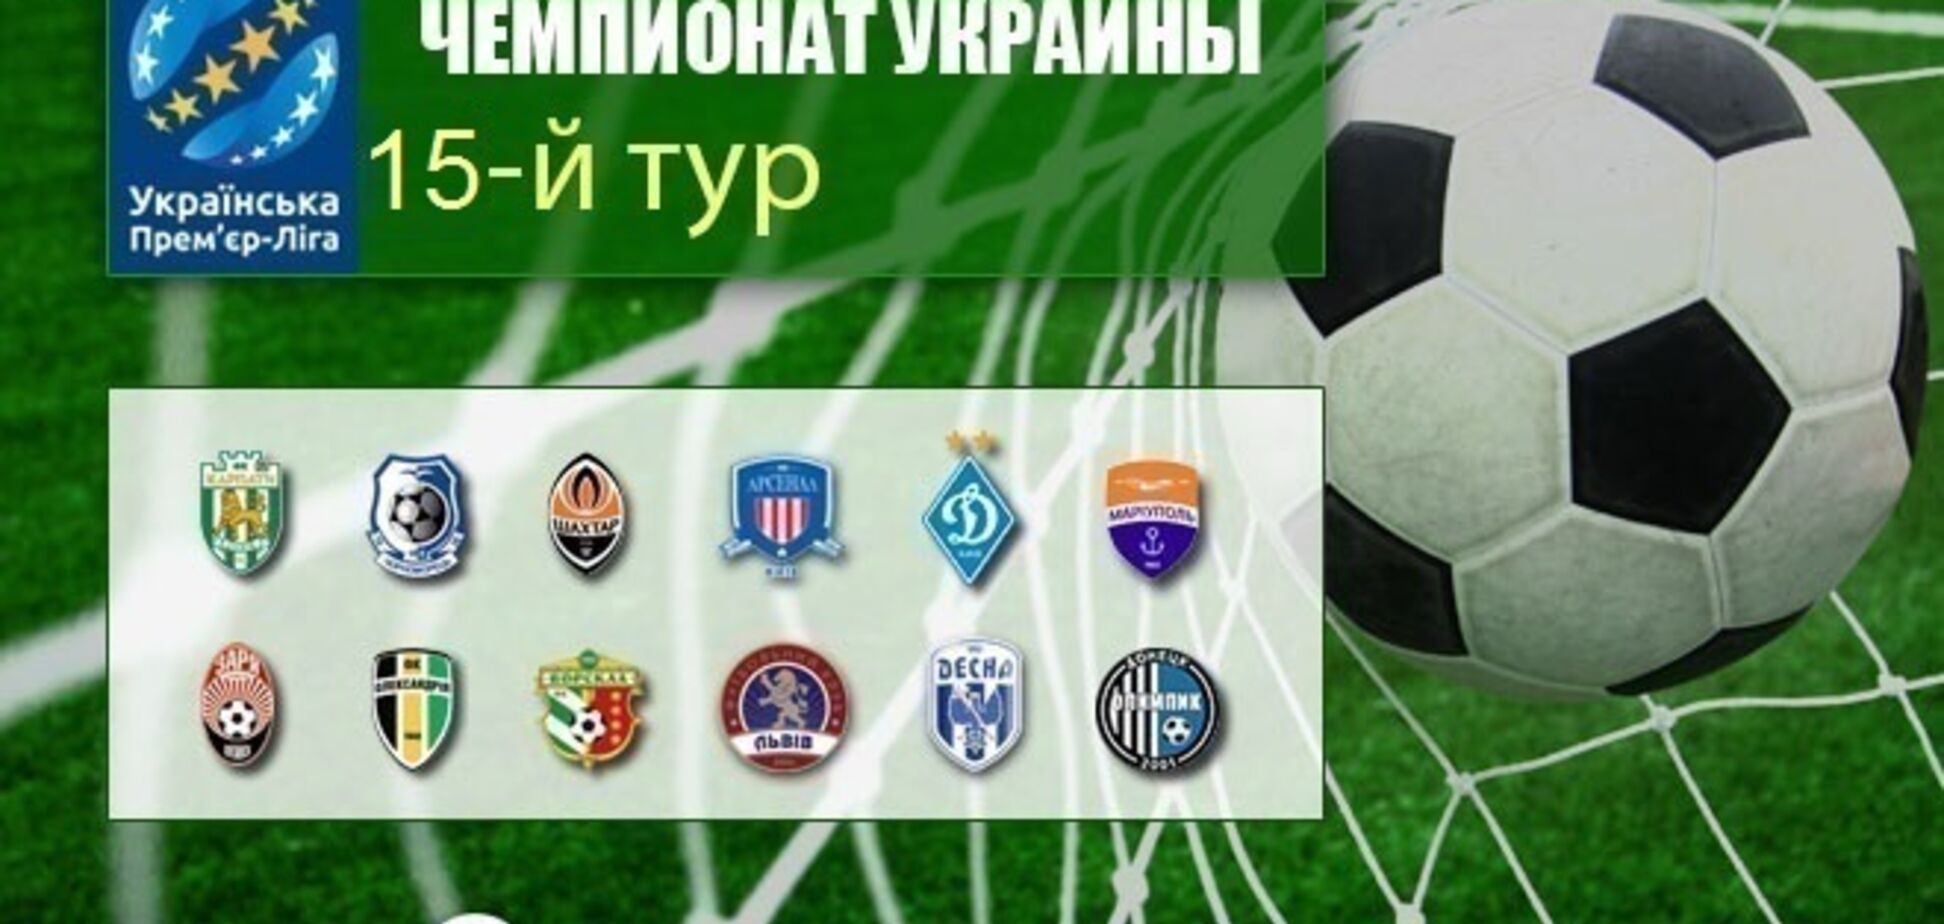 15-й тур чемпіонату України з футболу: результати та огляди